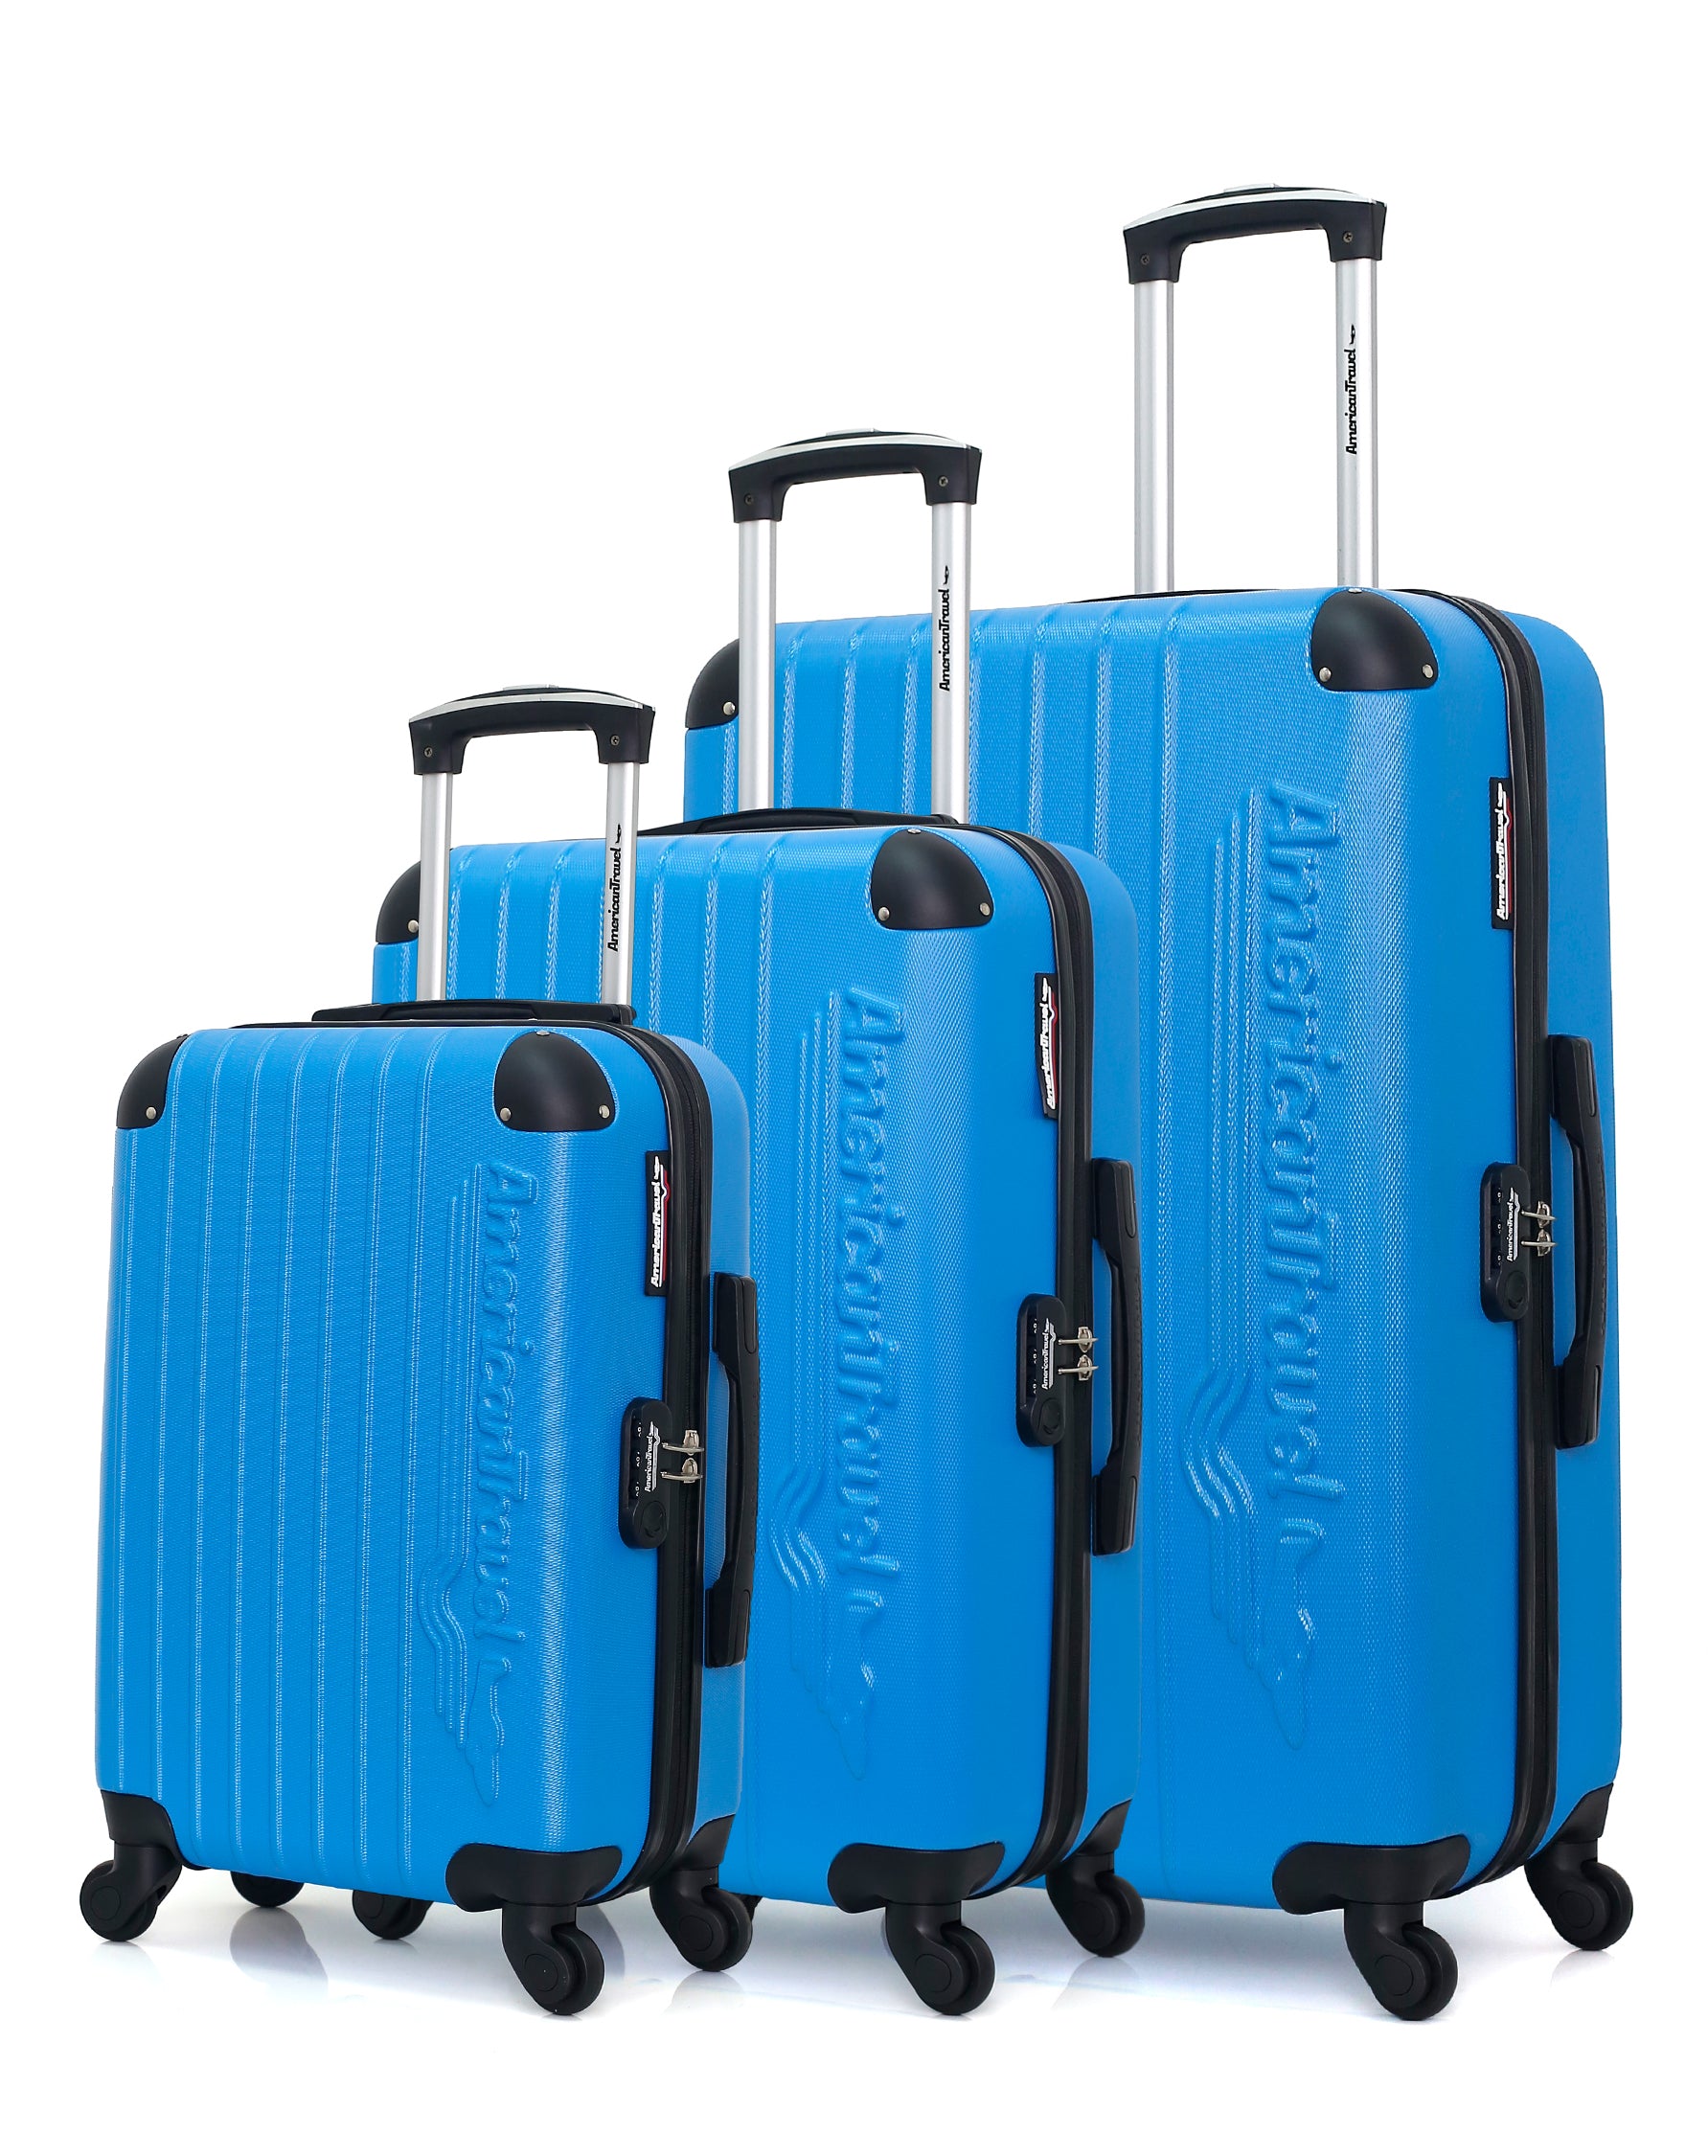 Lot de 3 Valises rigide en ABS - Valise à roulettes Valise de voyage agage  à main 4 roulettes set M-L-XL - bleu clair